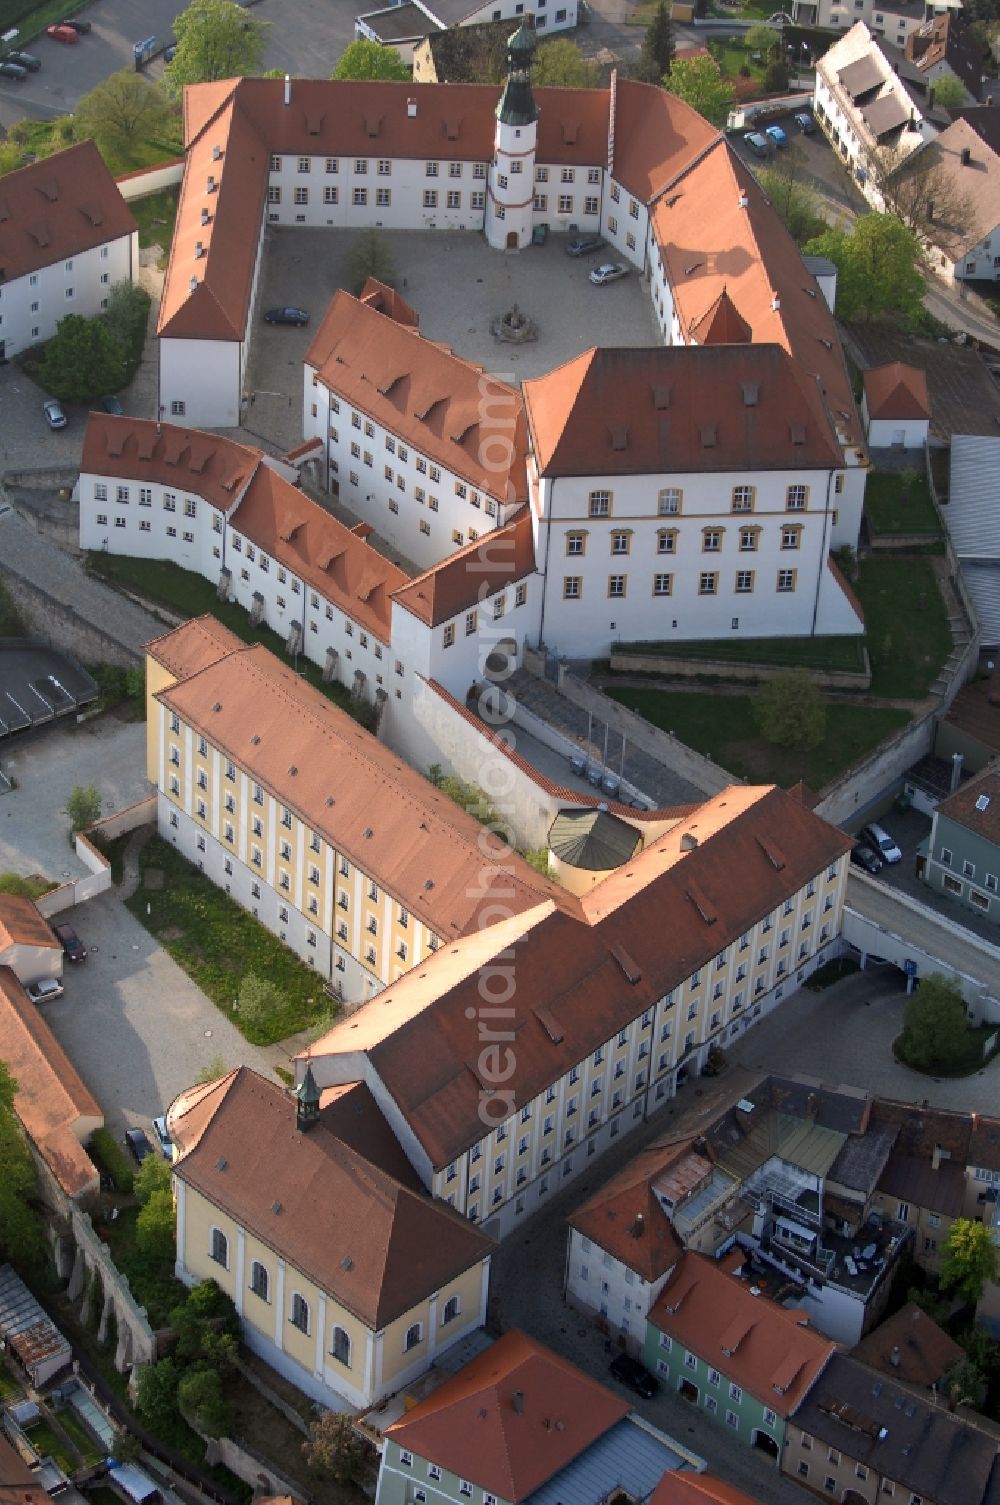 Aerial image Sulzbach-Rosenberg - Castle of Schloss in Sulzbach-Rosenberg in the state Bavaria